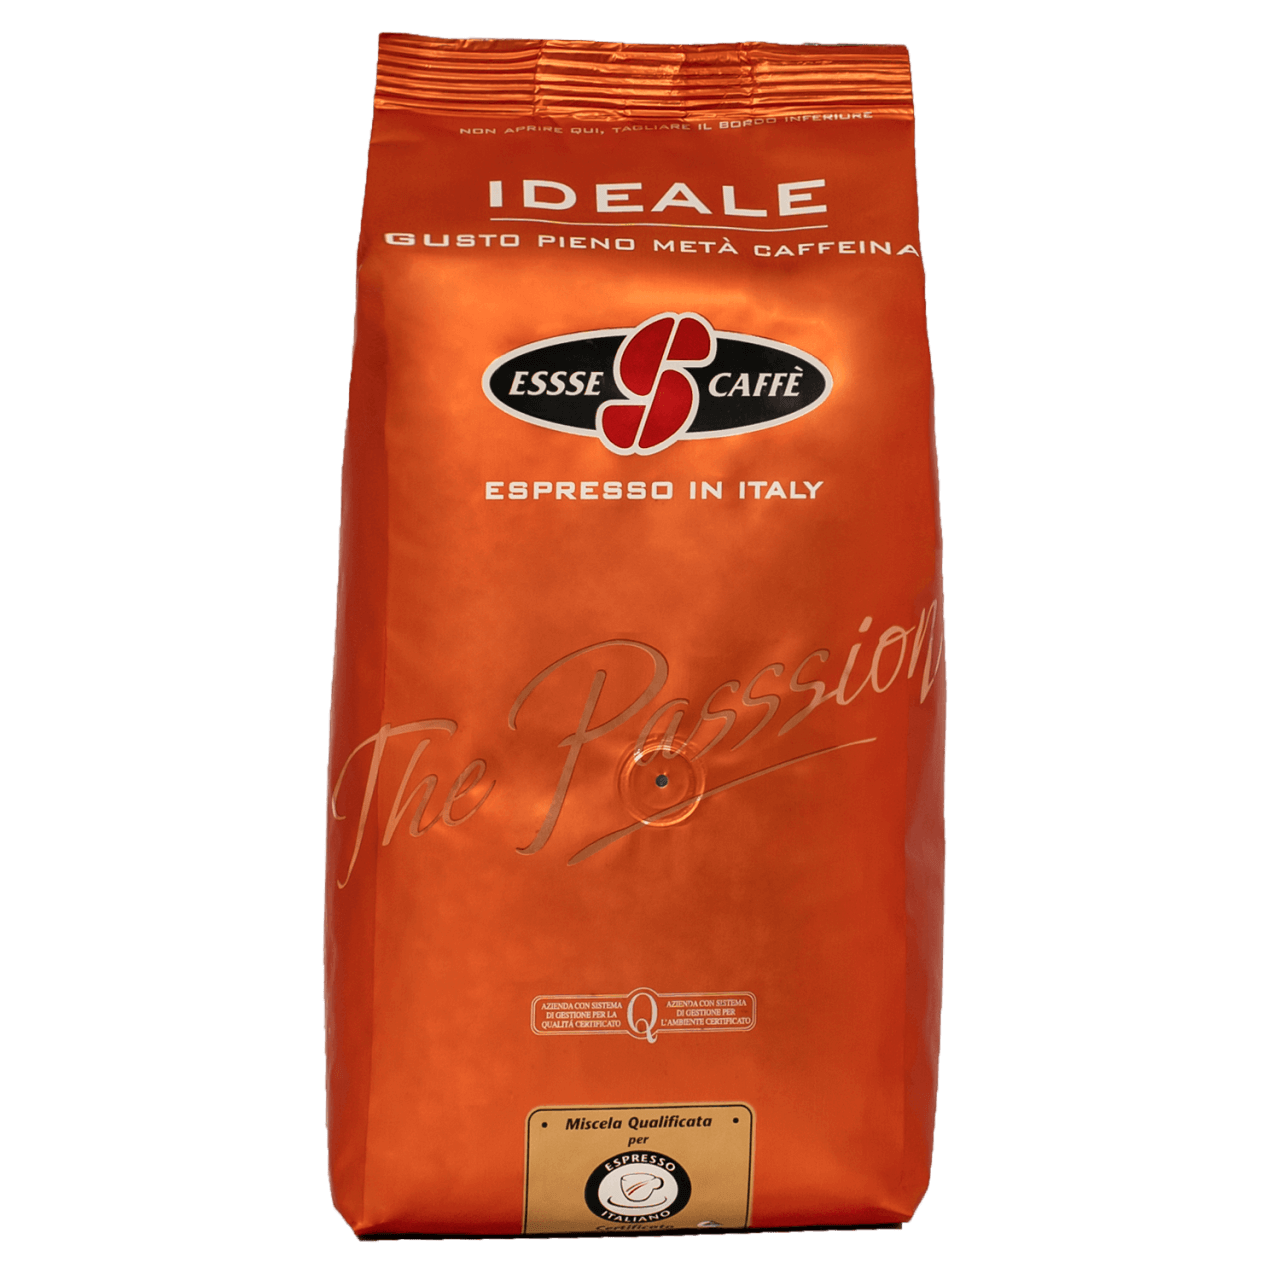 MHD WARE - Essse Caffe Ideale 1kg Bohnen